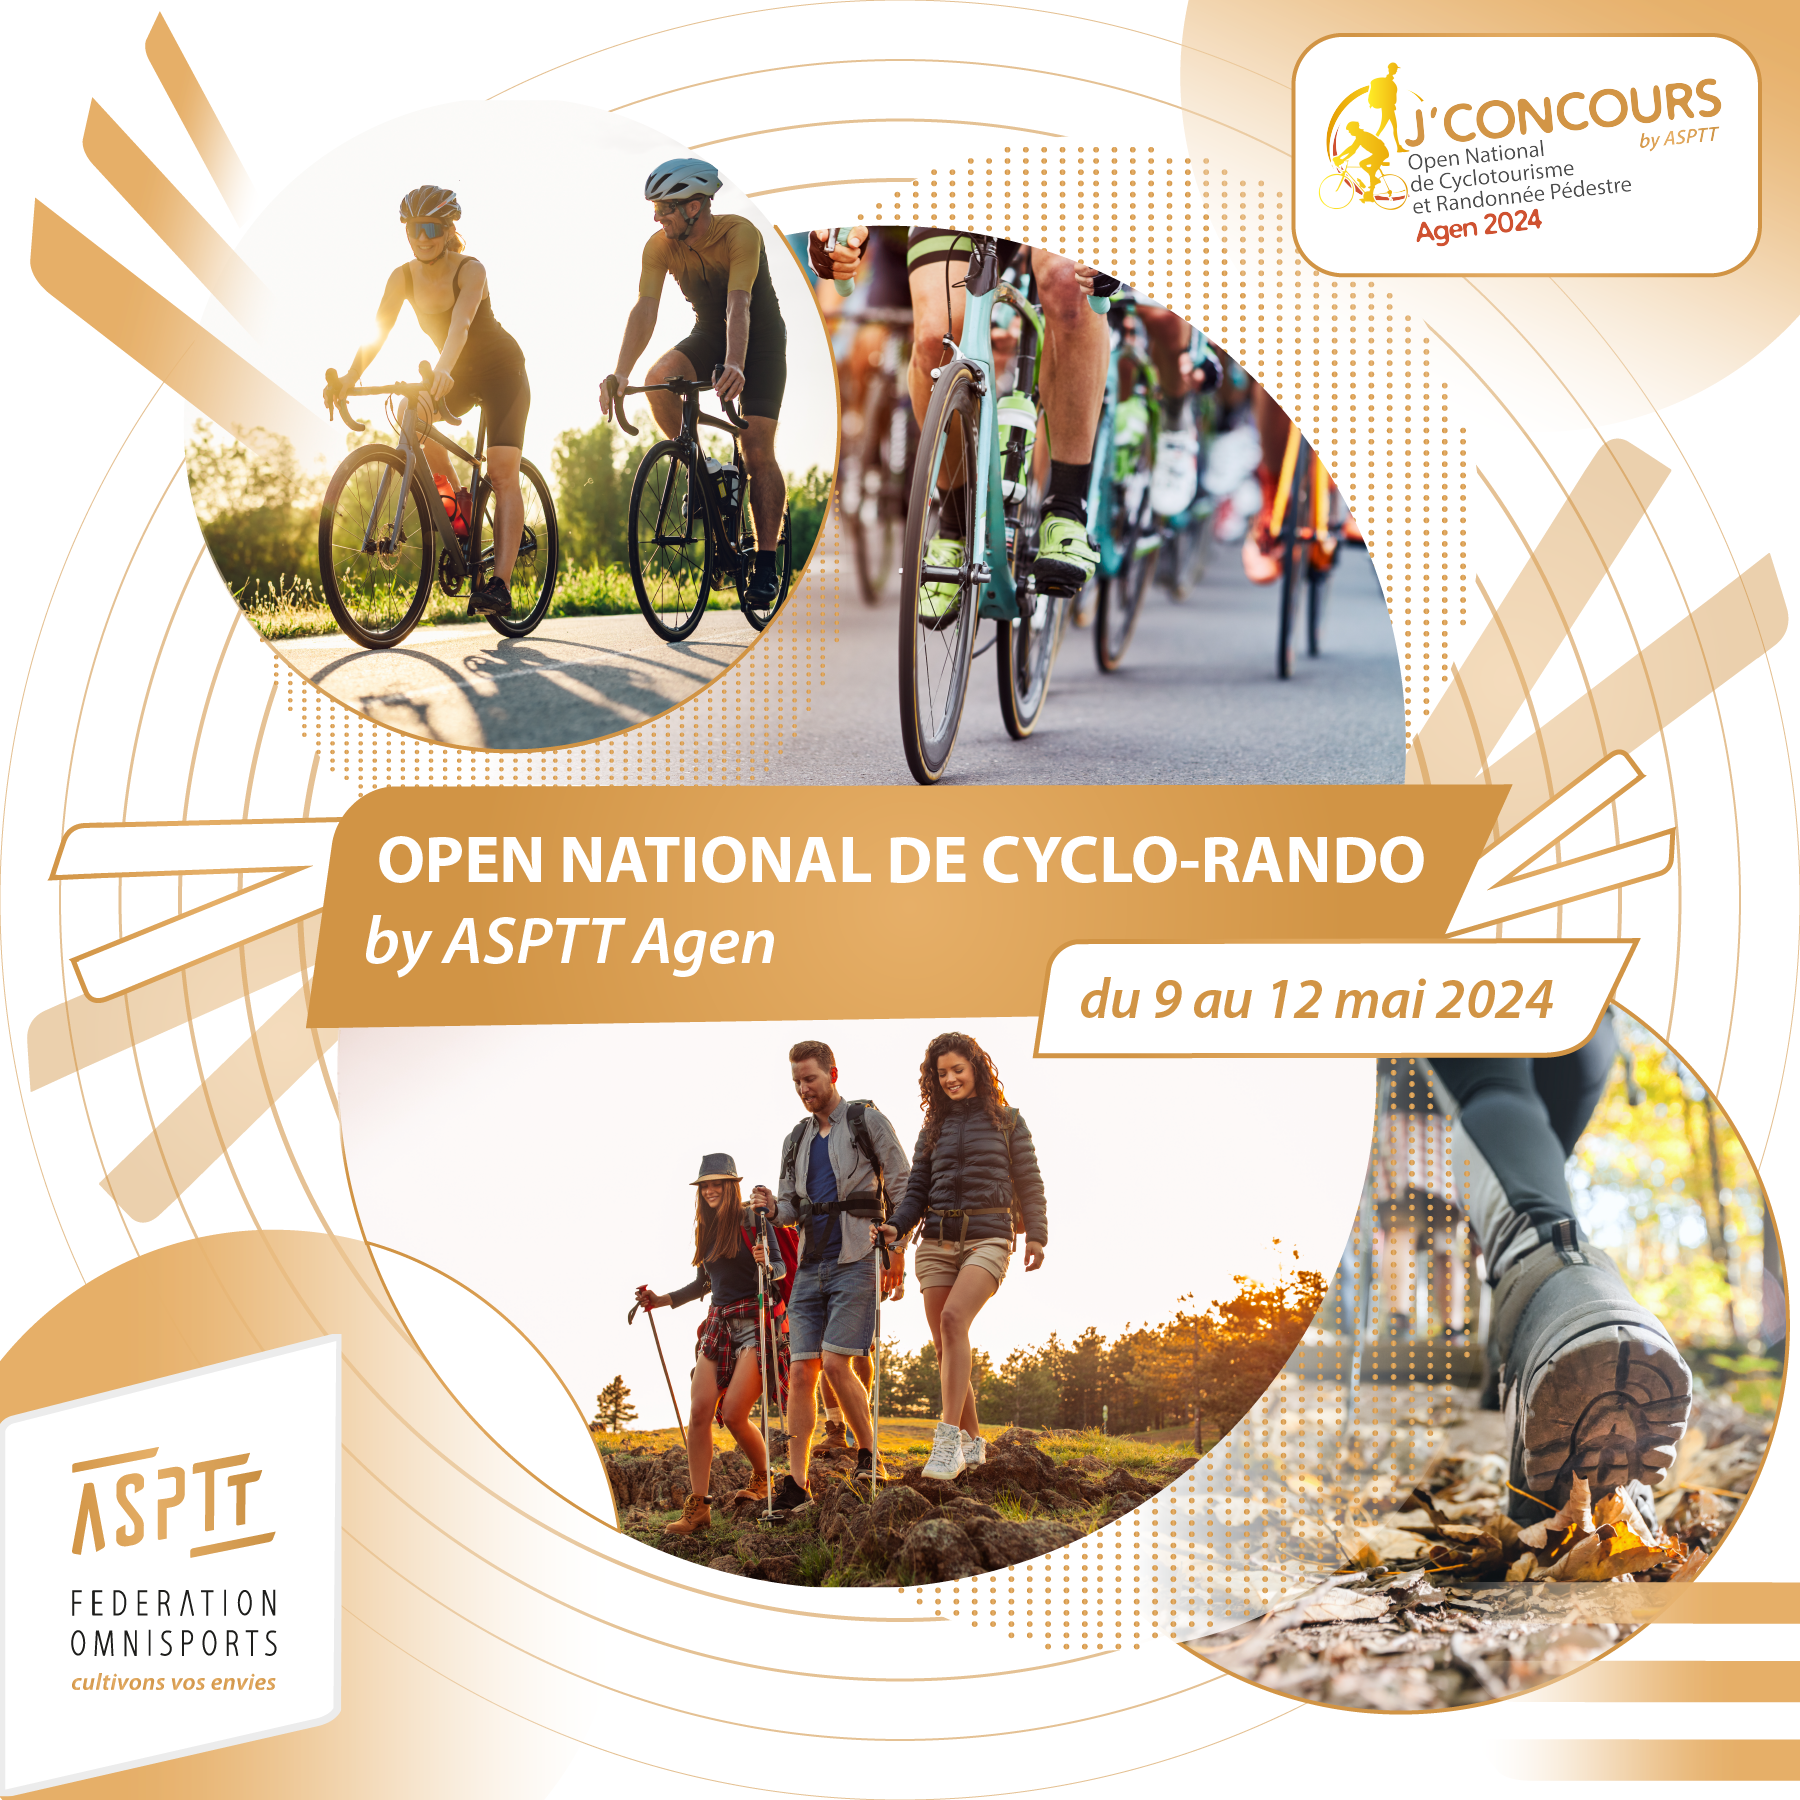 Open National de Cyclo-Rando by ASPTT